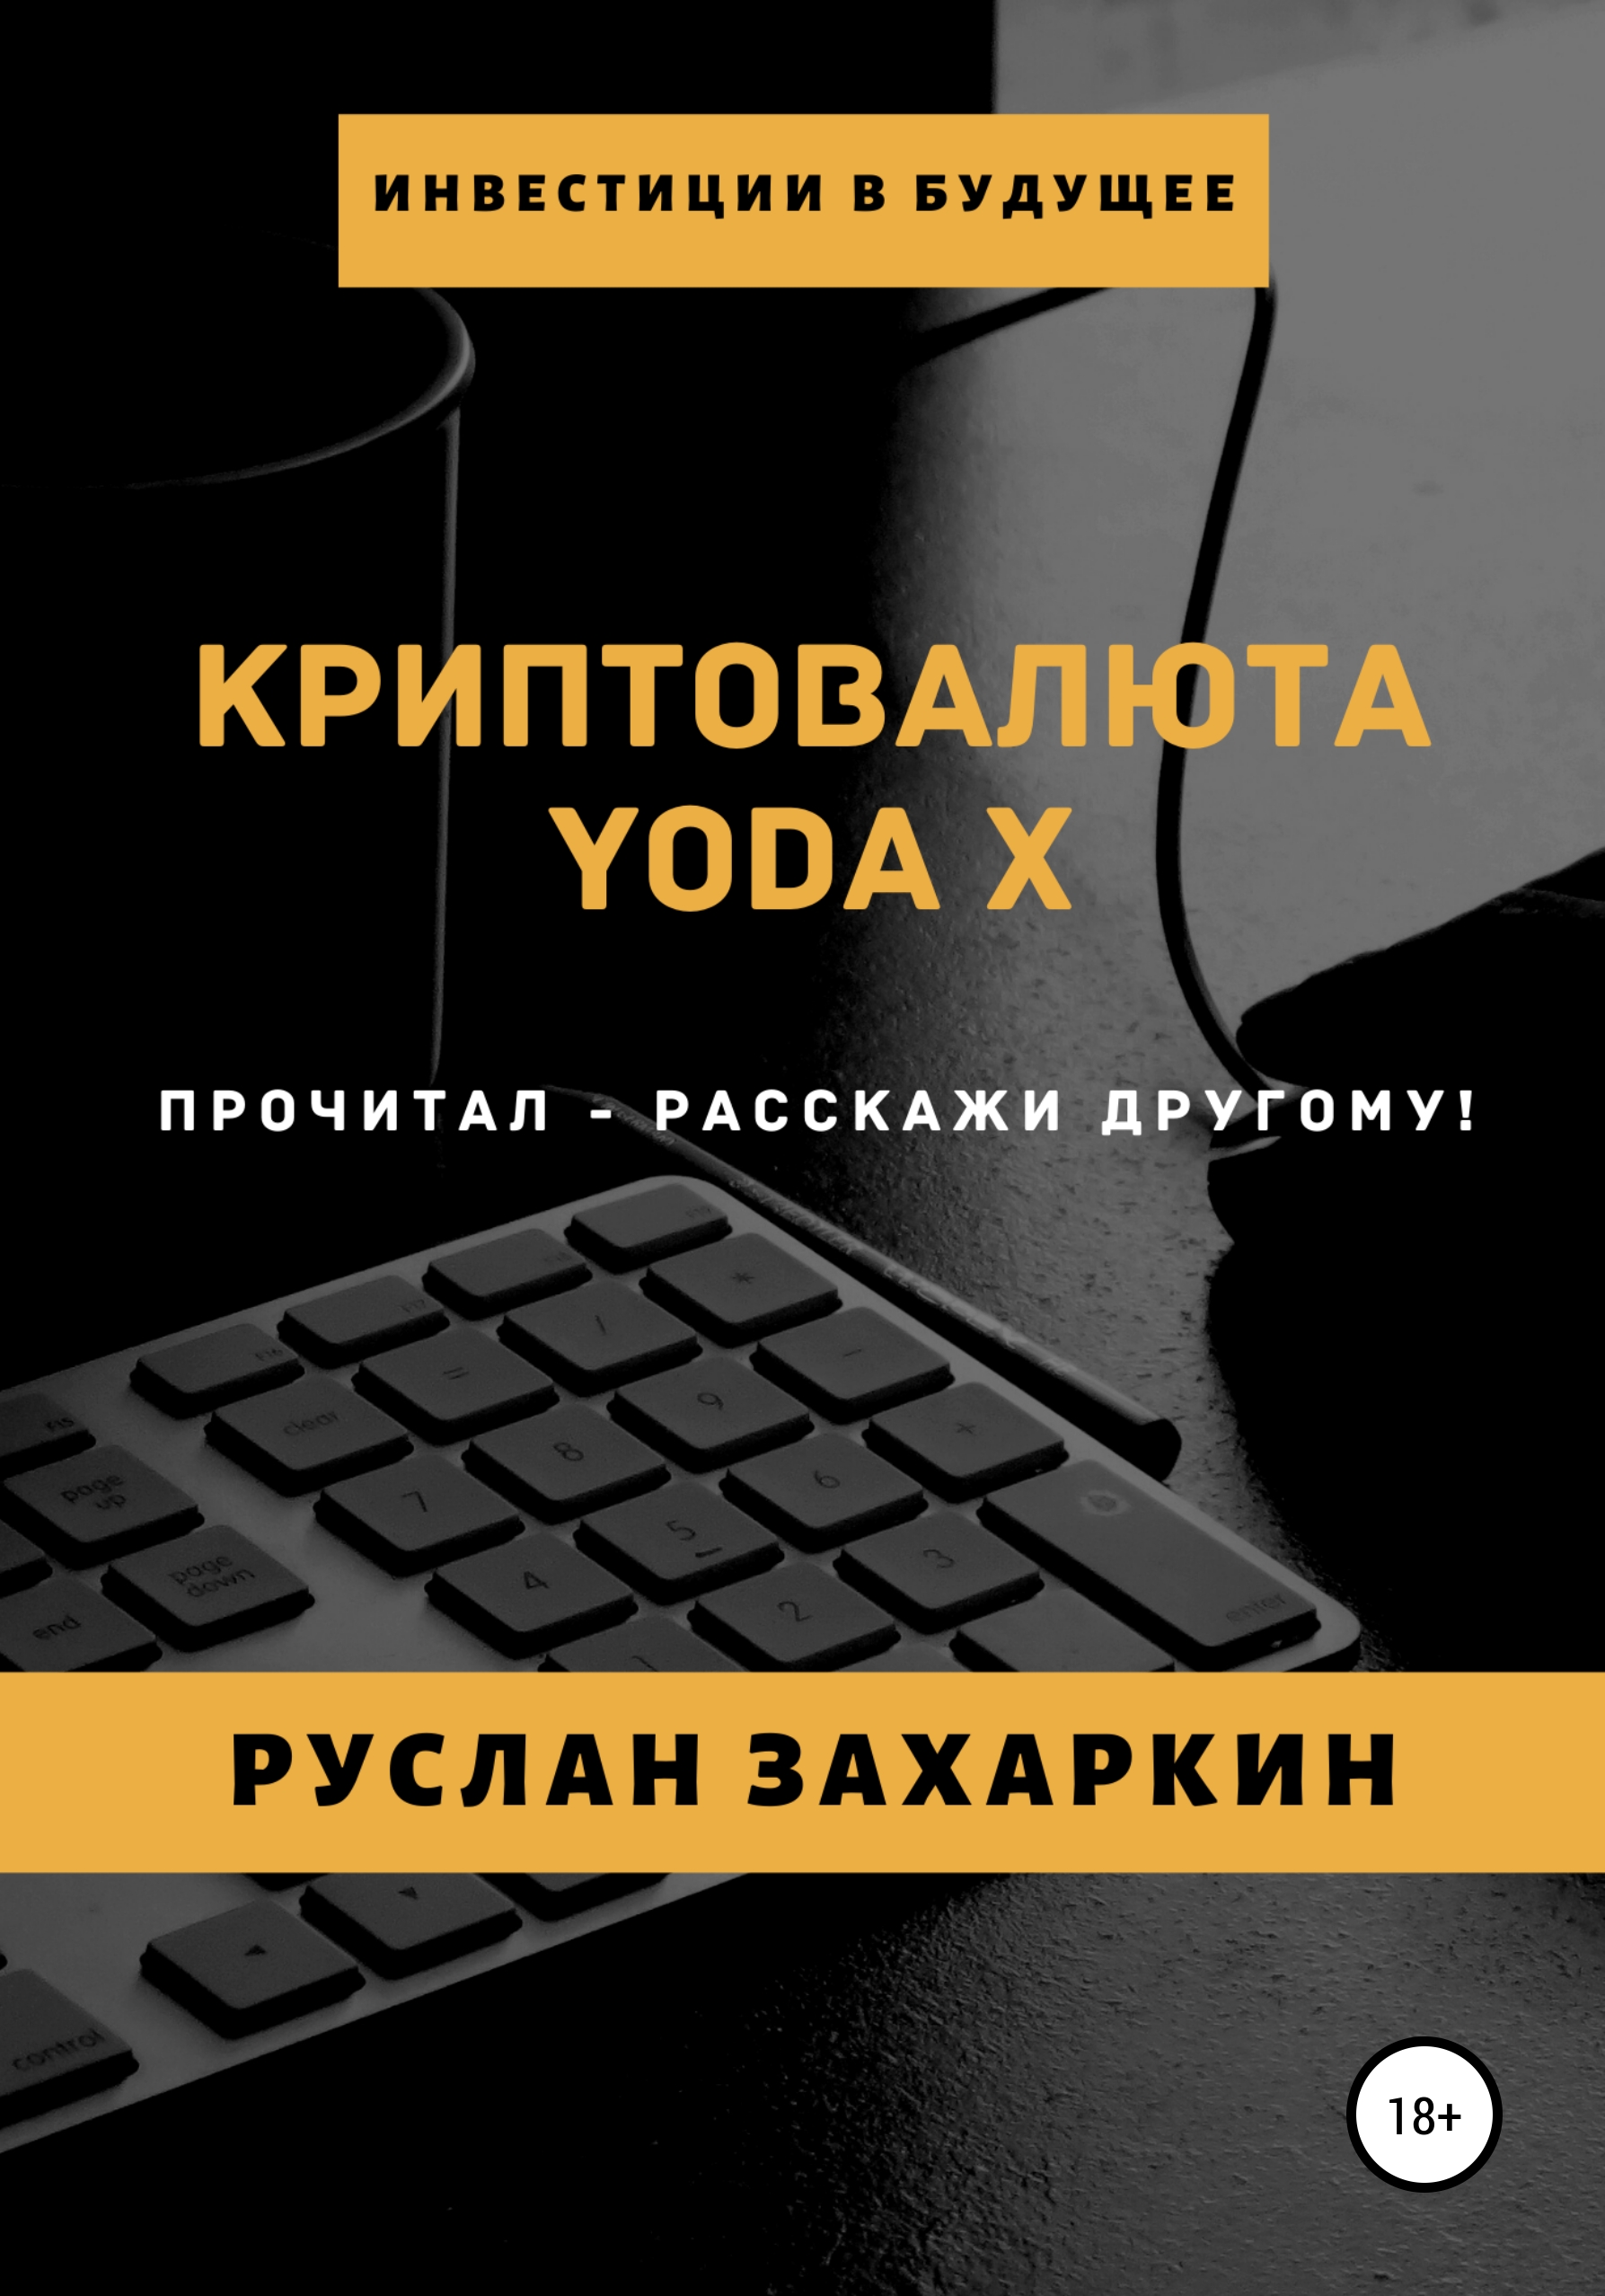 Книга  Криптовалюта Yoda X созданная Руслан Игоревич Захаркин может относится к жанру интернет, стартапы и создание бизнеса, ценные бумаги / инвестиции. Стоимость электронной книги Криптовалюта Yoda X с идентификатором 51931113 составляет 149.00 руб.